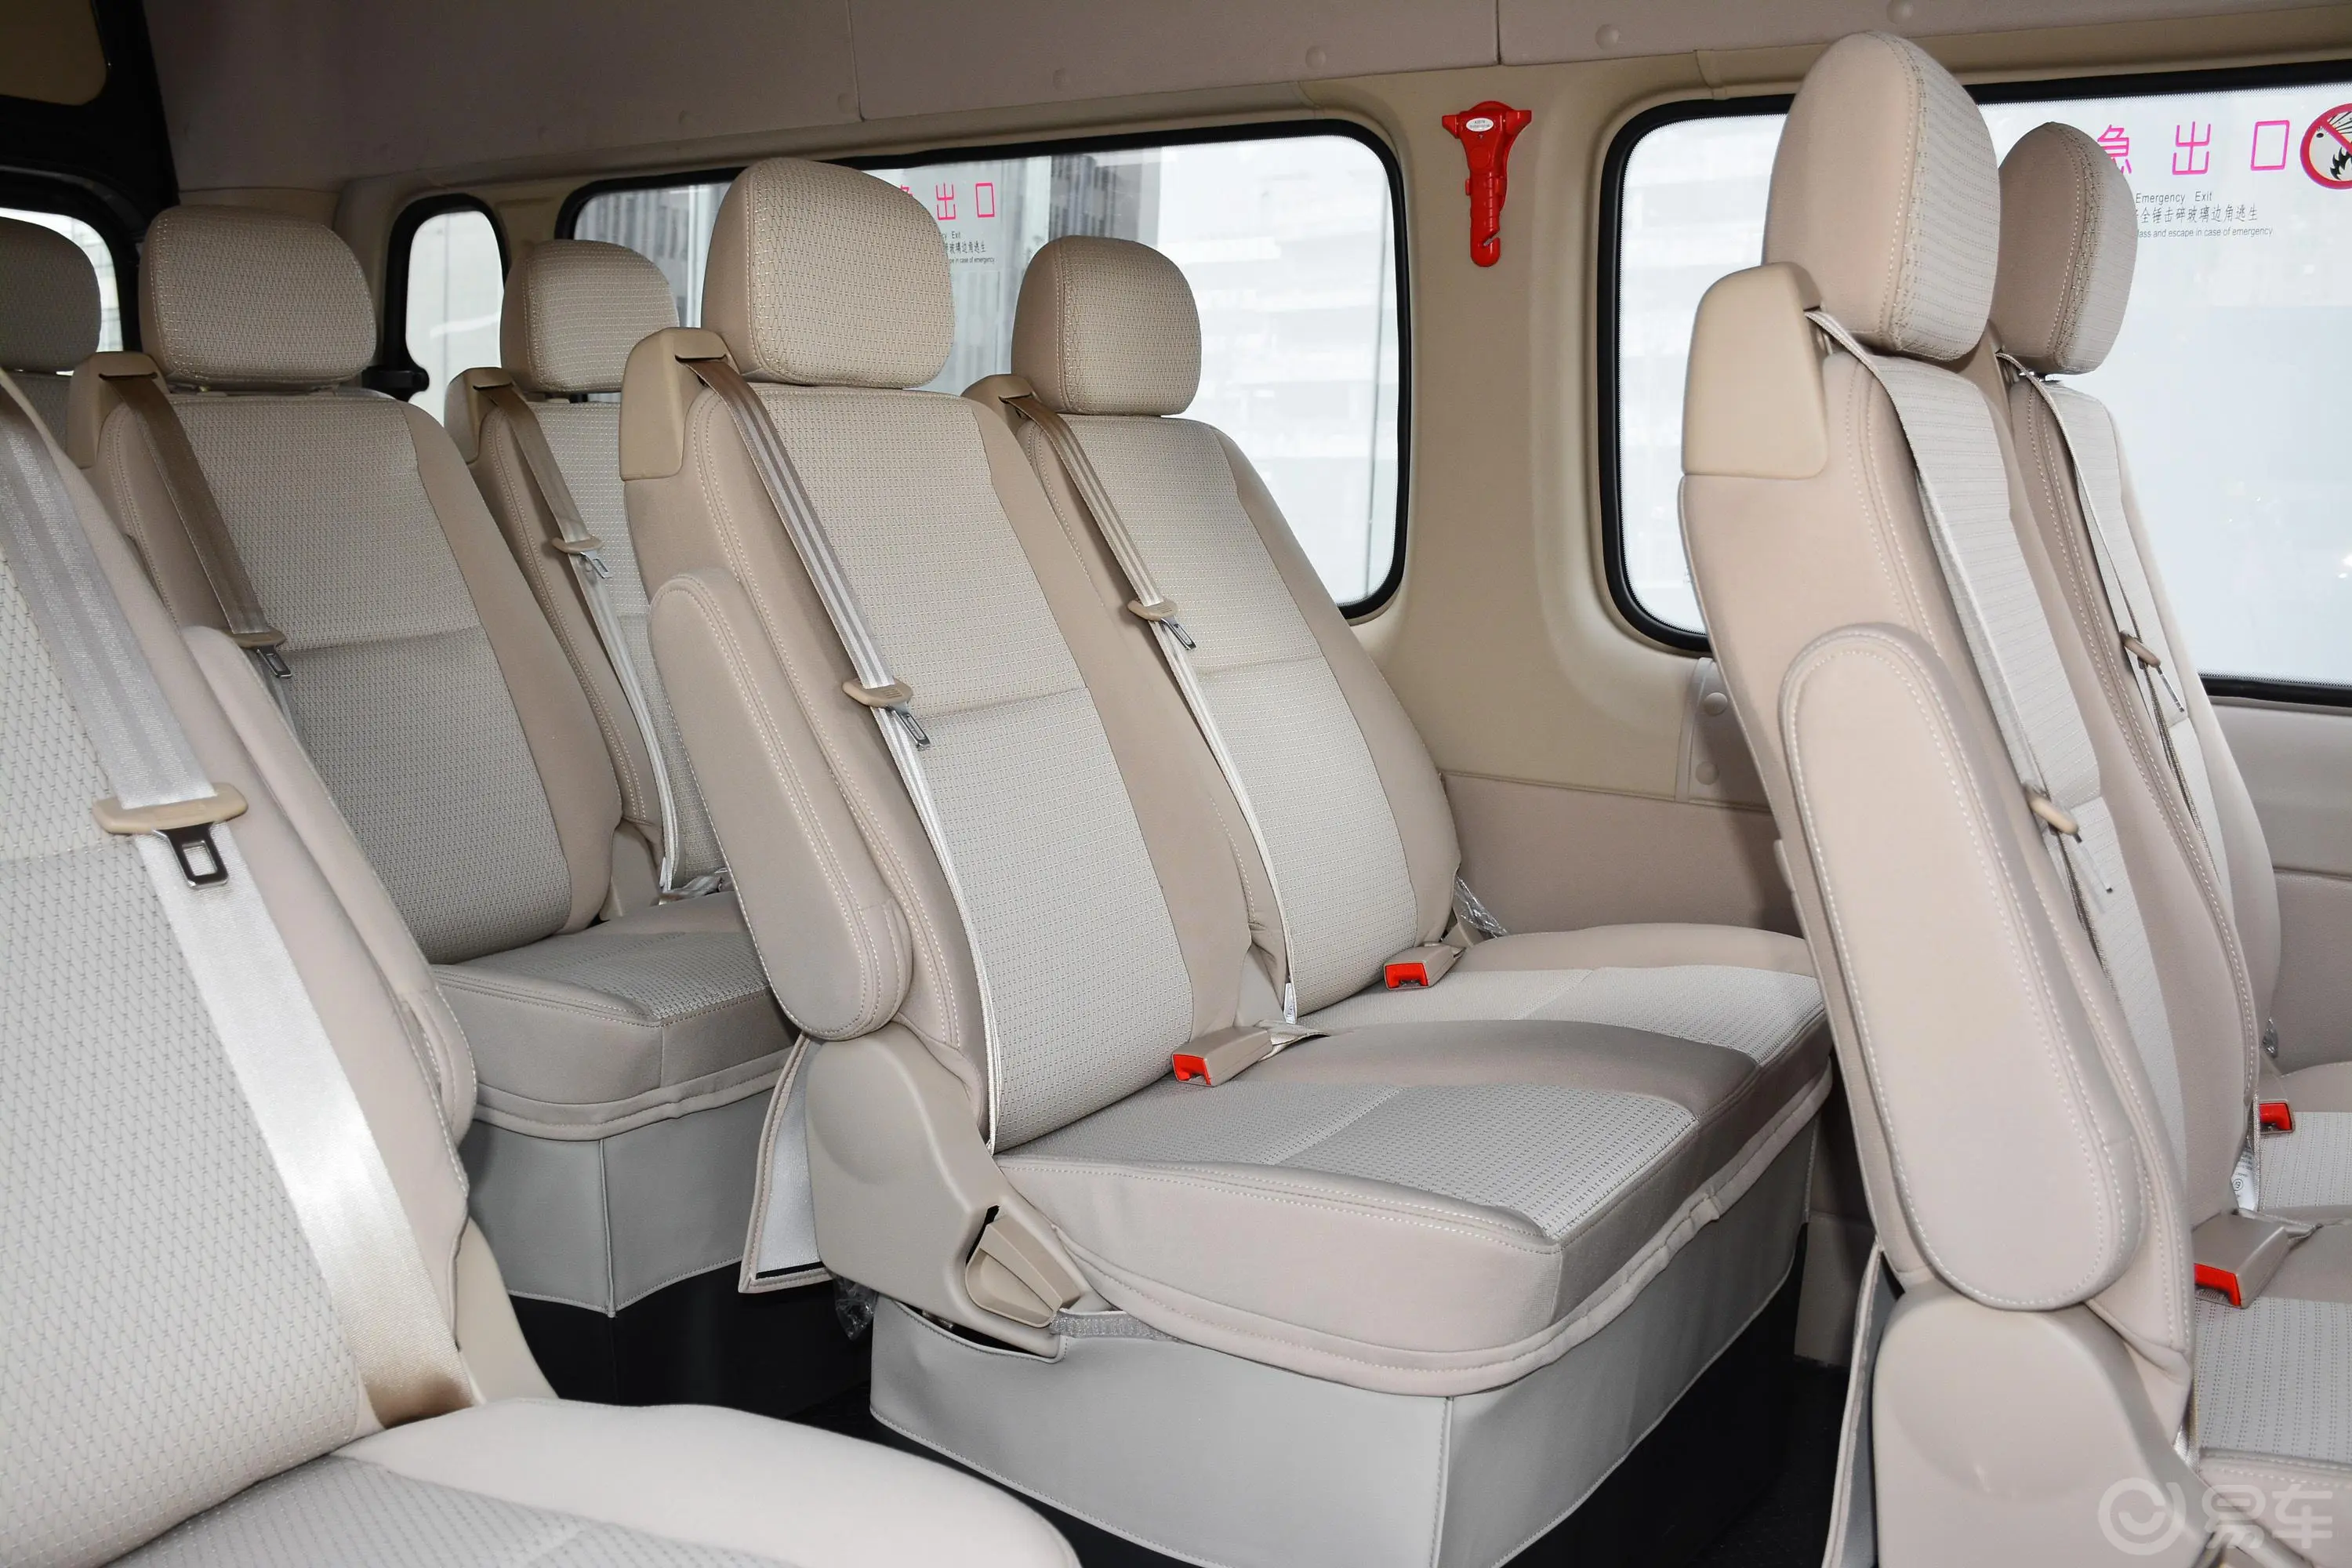 图雅诺商旅版小客 康明斯 2.8T 手动加长轴新高顶高级客车 14座第三排座椅